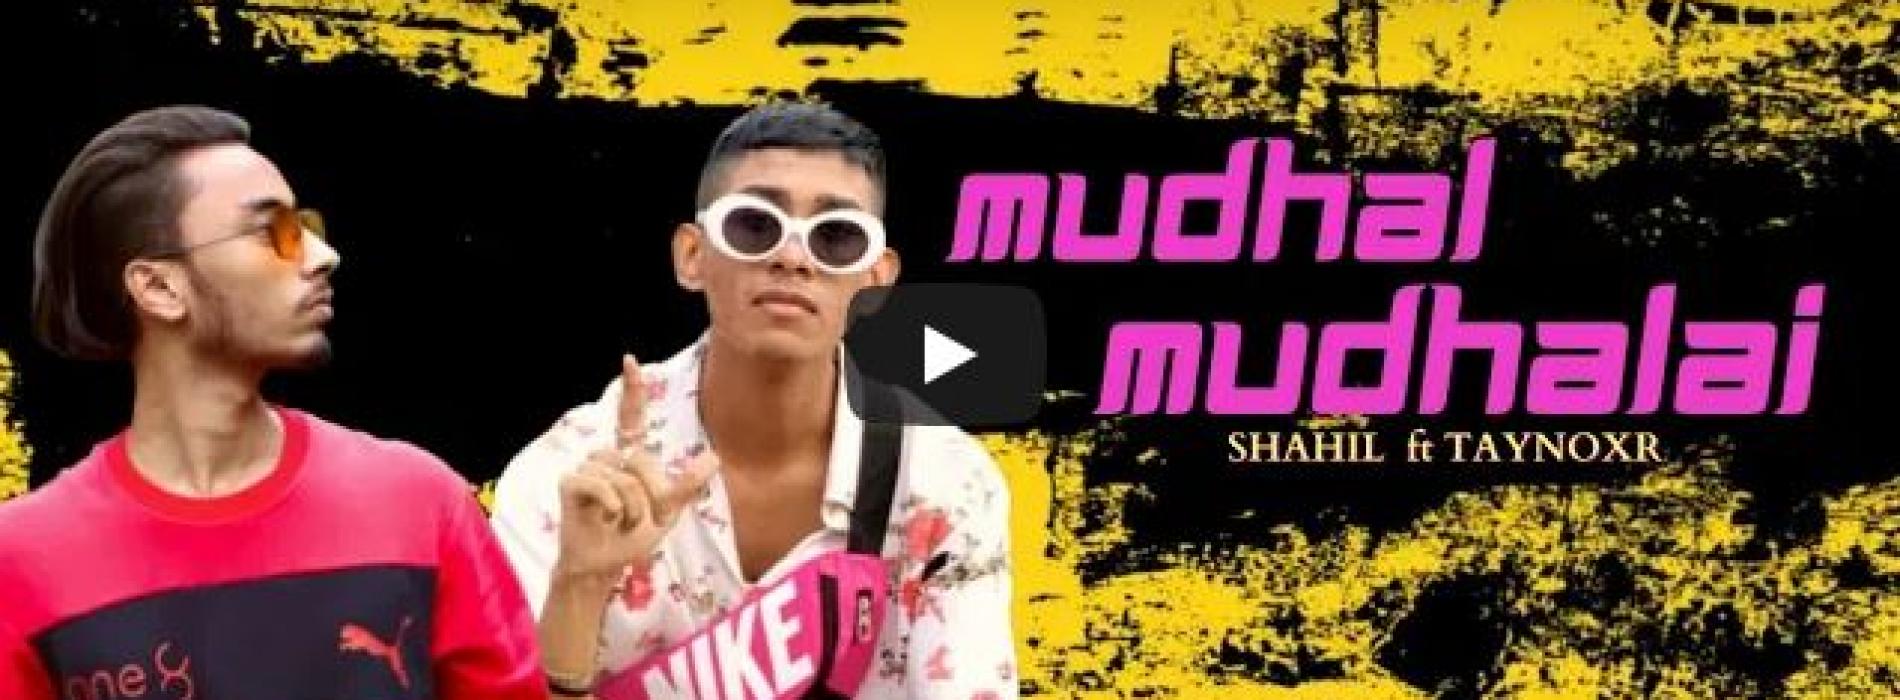 New Music : Mudhal Mudhalai – Shahil YDS Ft Taynoxr